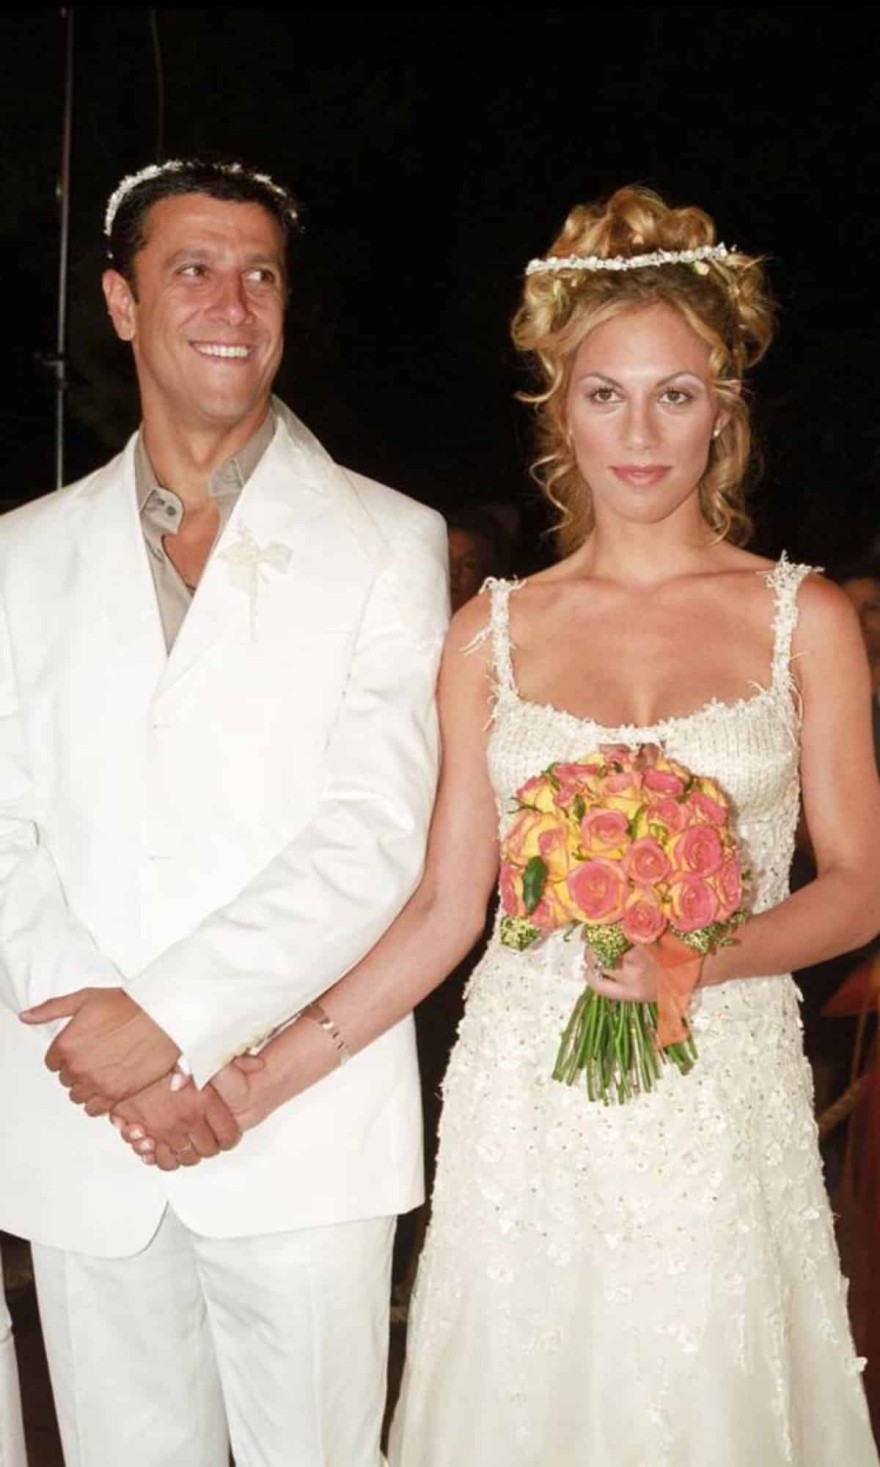 Φωτογραφίες από τον γάμο της Ντορέττας Παπαδημητρίου & του Κώστα Πηλαδάκη από το 2004